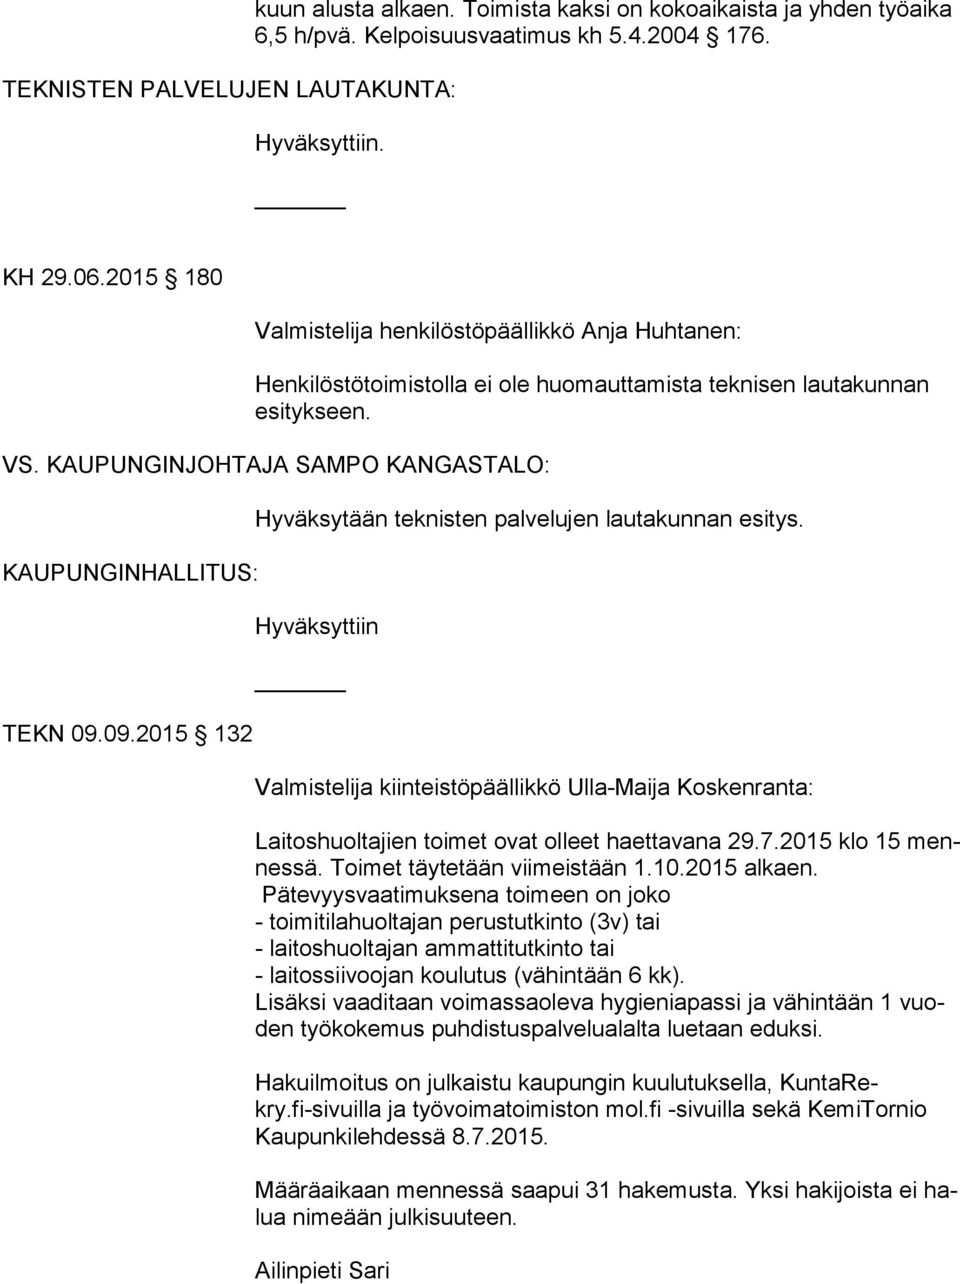 KAUPUNGINJOHTAJA SAMPO KANGASTALO: KAUPUNGINHALLITUS: TEKN 09.09.2015 132 Hyväksytään teknisten palvelujen lautakunnan esitys.